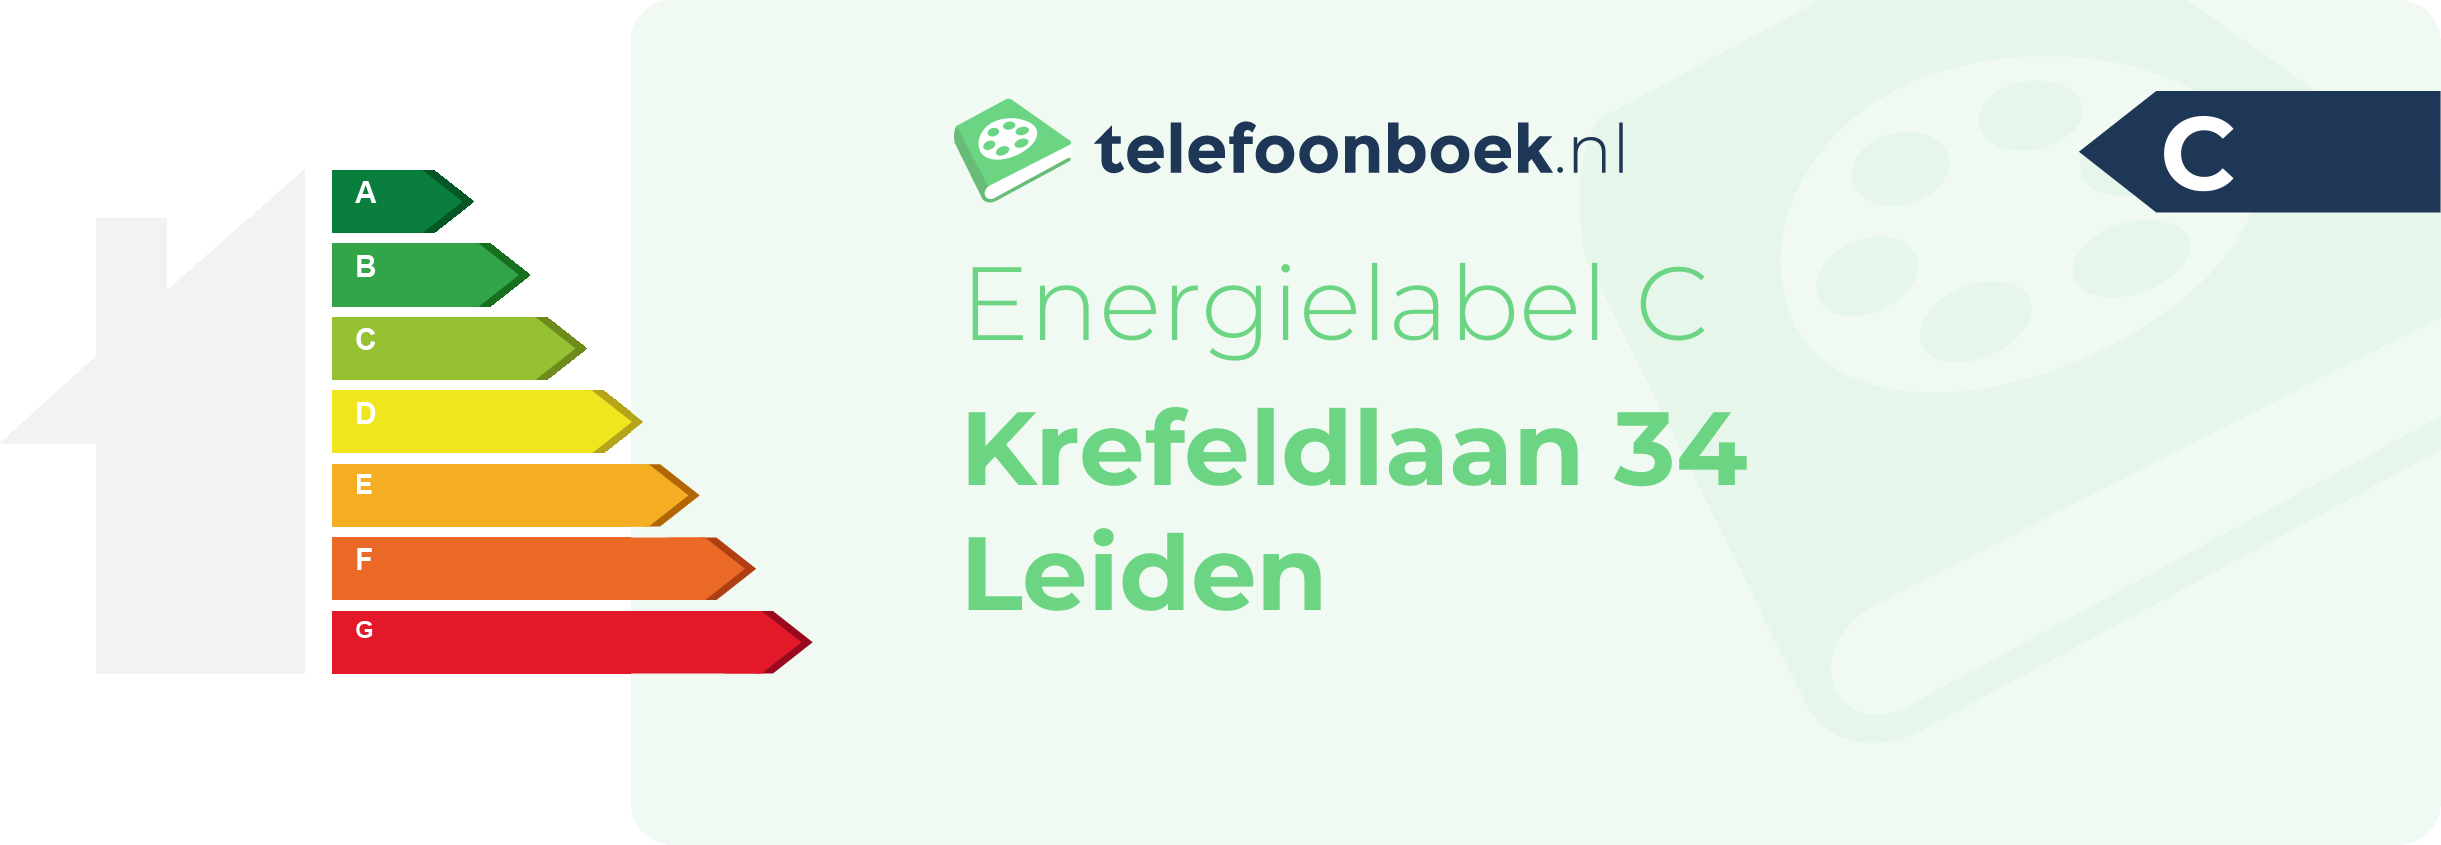 Energielabel Krefeldlaan 34 Leiden